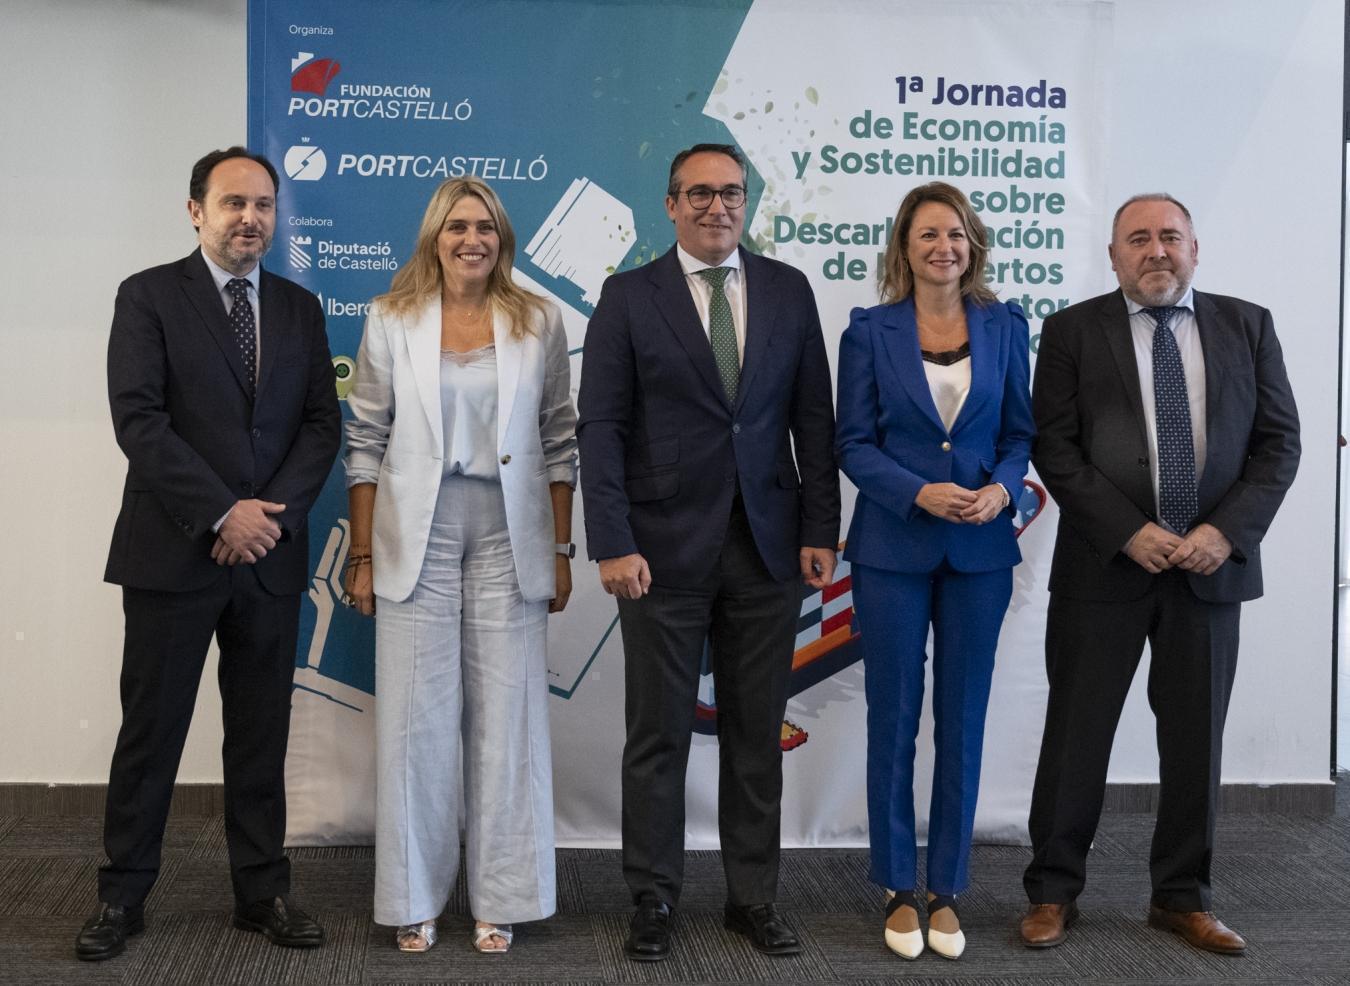 Marta Barrachina: “La col·laboració conjunta entre la Diputació de Castelló i el Port és una aliança estratègica destinada a impulsar el desenvolupament sostenible de la nostra província”